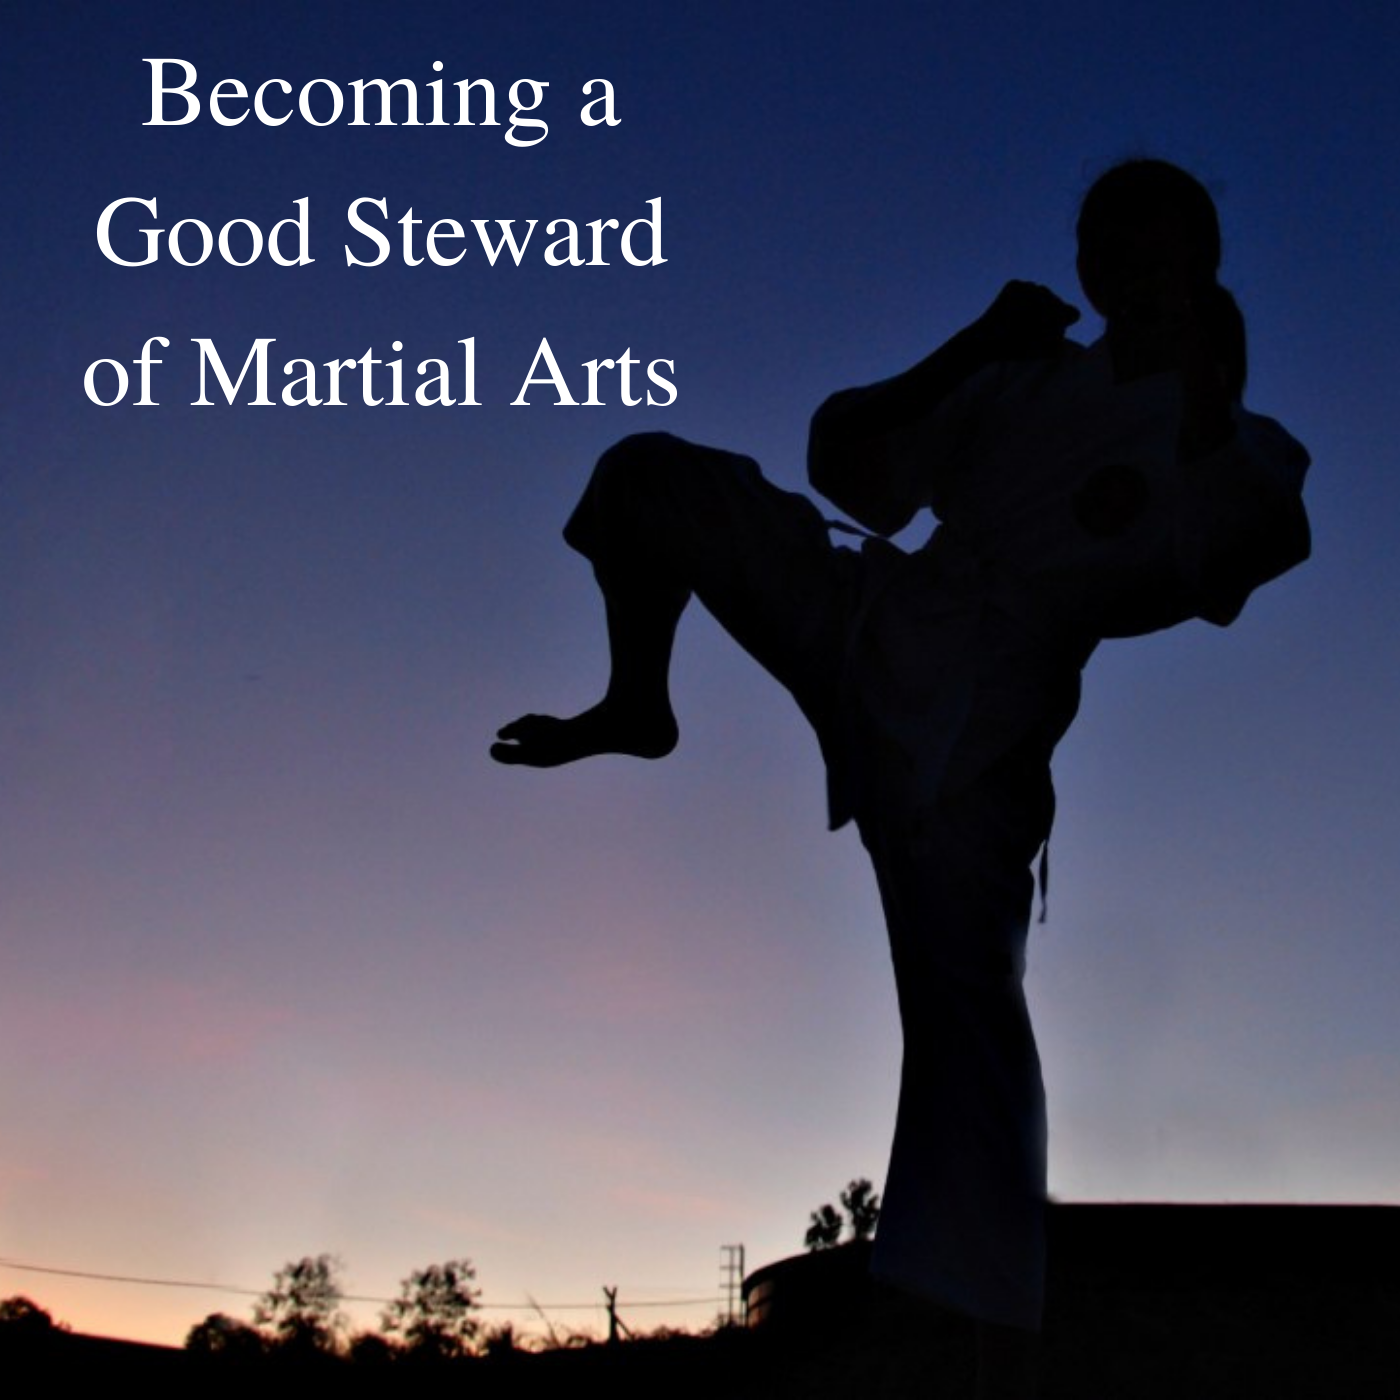 * Becoming a Good Steward of Martial Arts